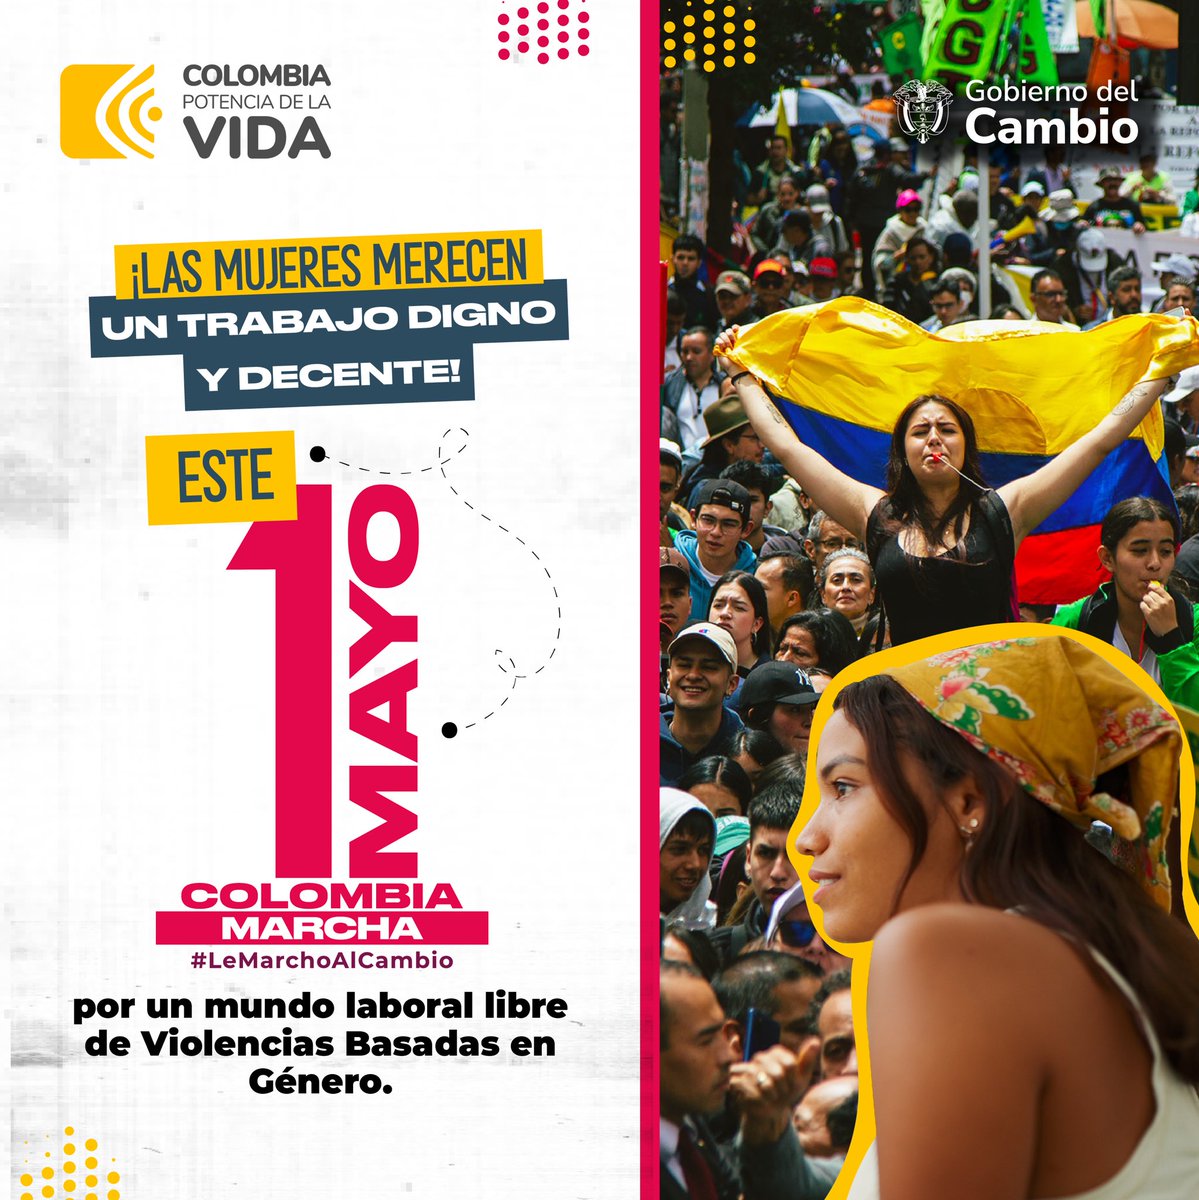 Colombia camina hacia la equidad de género a pasos agigantados. 💟 Por la igualdad de derechos y oportunidades para todos, #LeMarchoAlCambio. El 1ro de mayo defendemos la libertad de las mujeres, para que ni una más sea oprimida ni violentada.